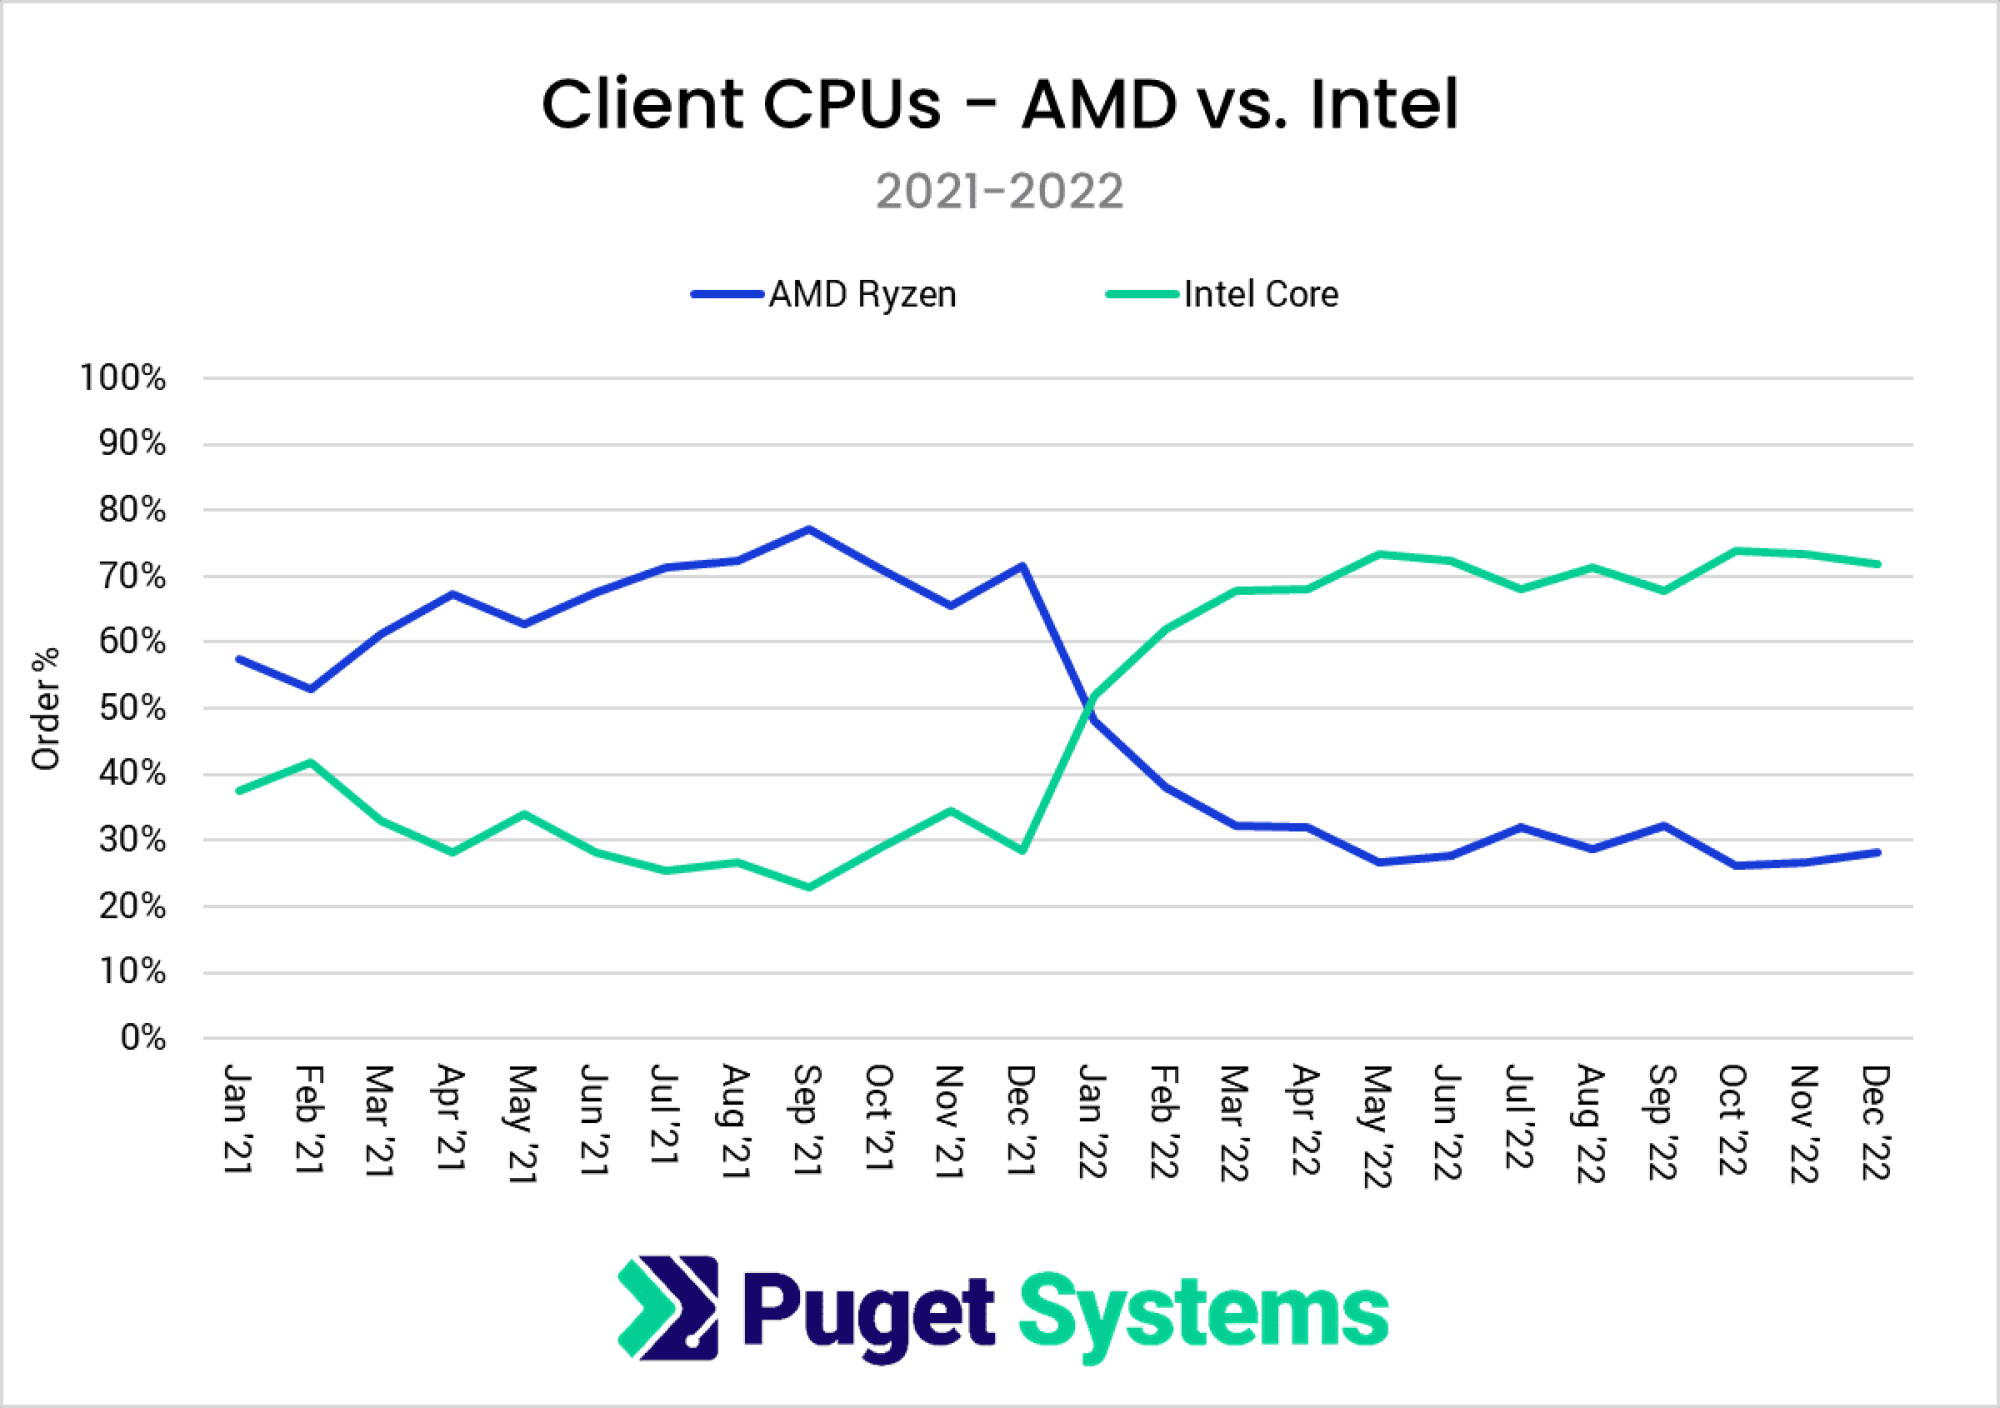 Client CPU sales